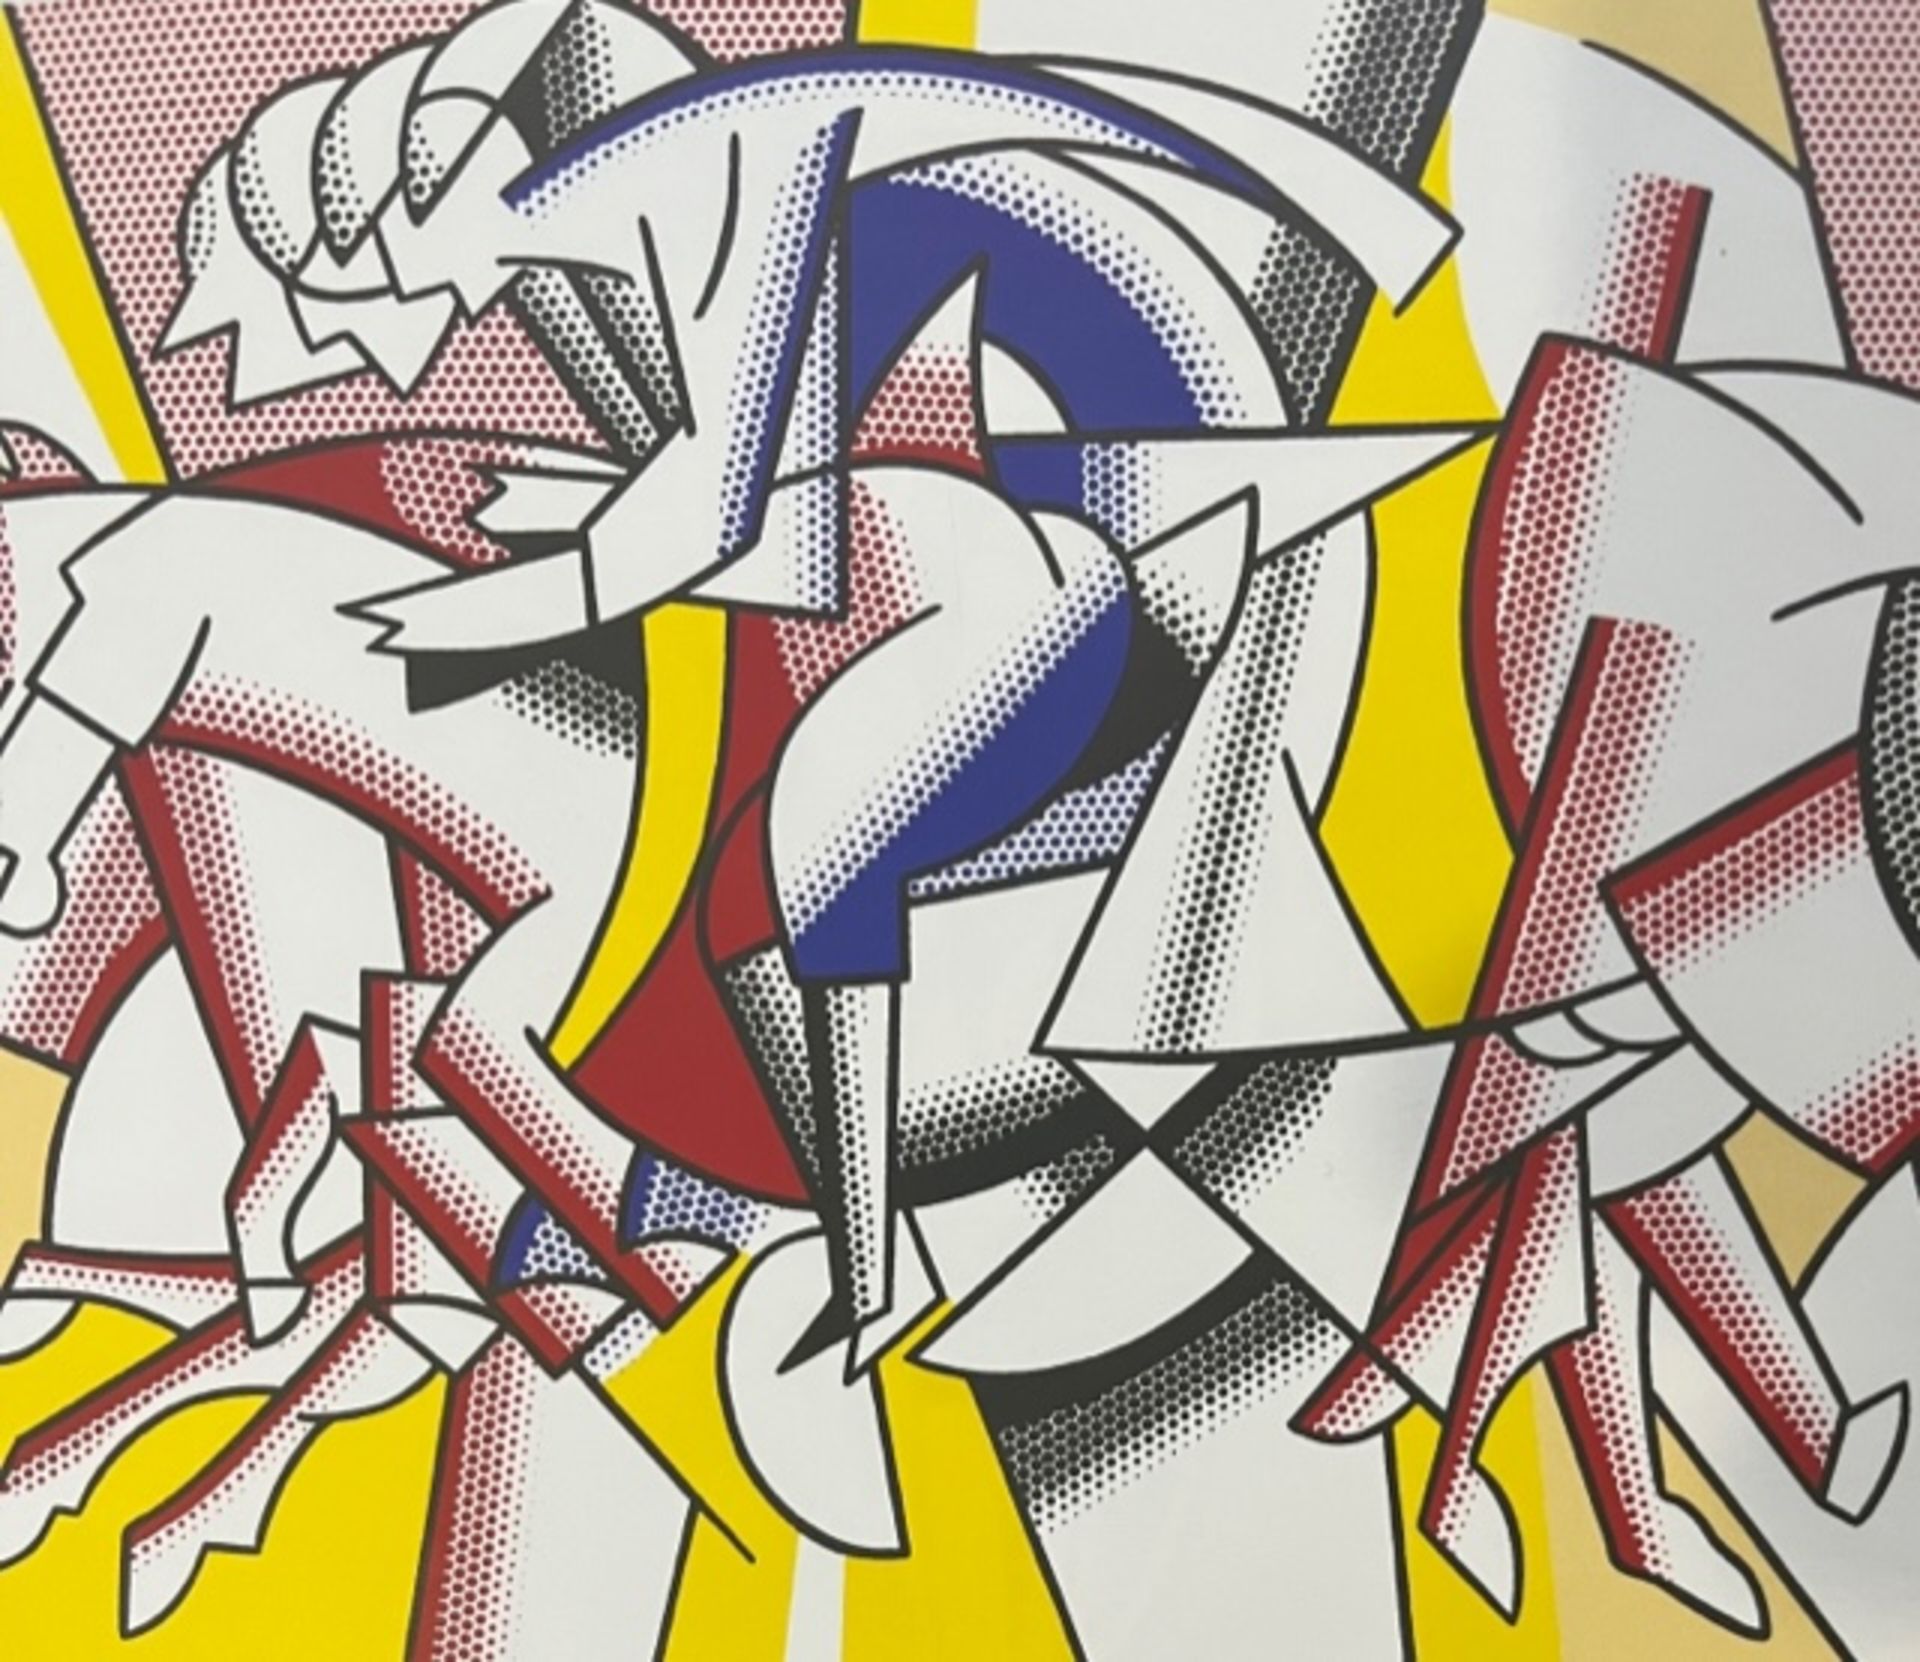 Roy Lichtenstein "Horses" Print.